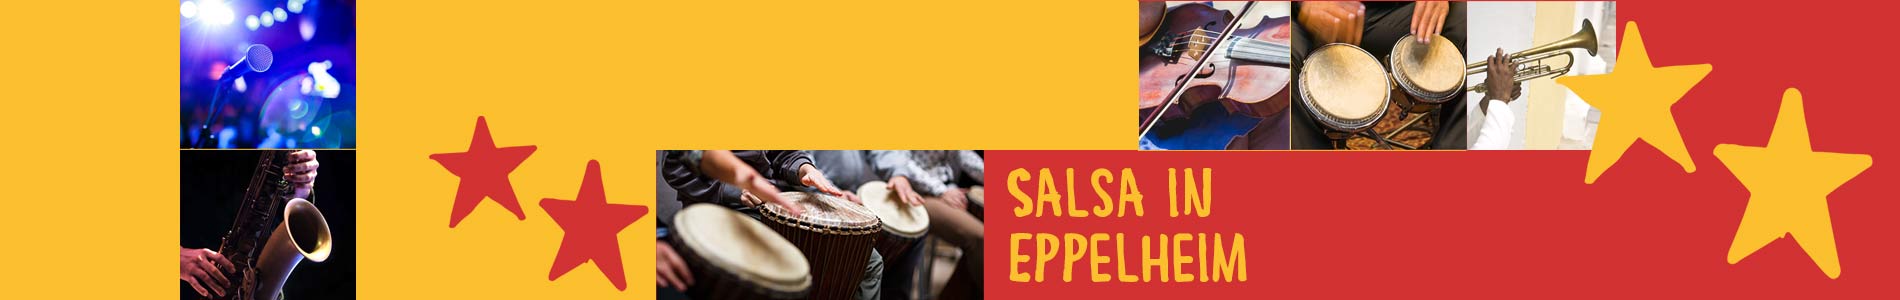 Salsa in Eppelheim – Salsa lernen und tanzen, Tanzkurse, Partys, Veranstaltungen